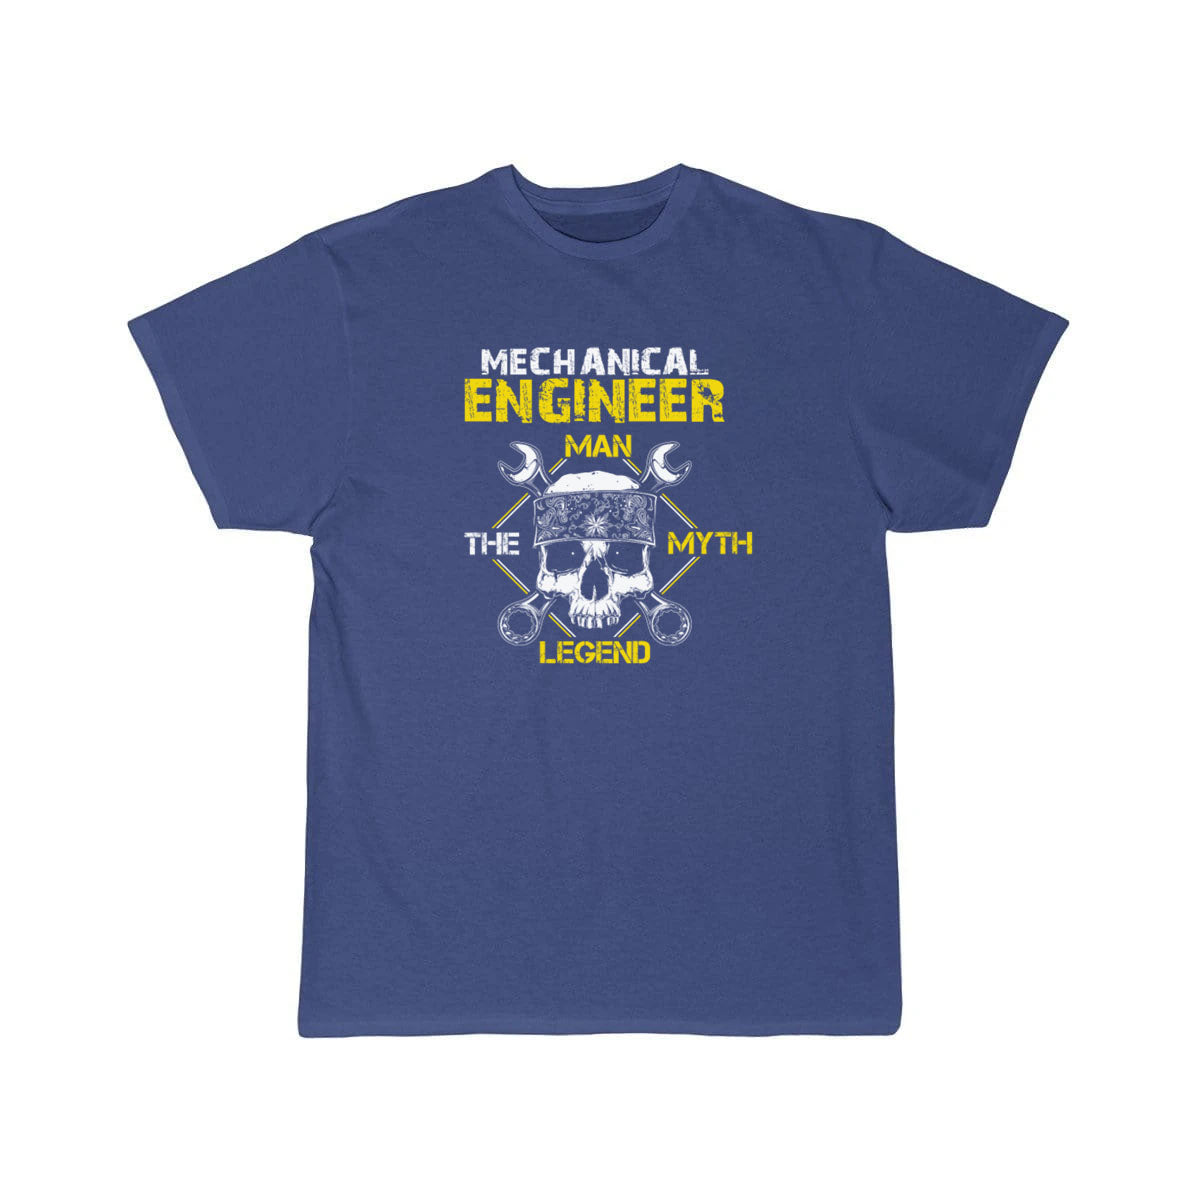 Mechanical engineer the legend - t shirt THE AV8R